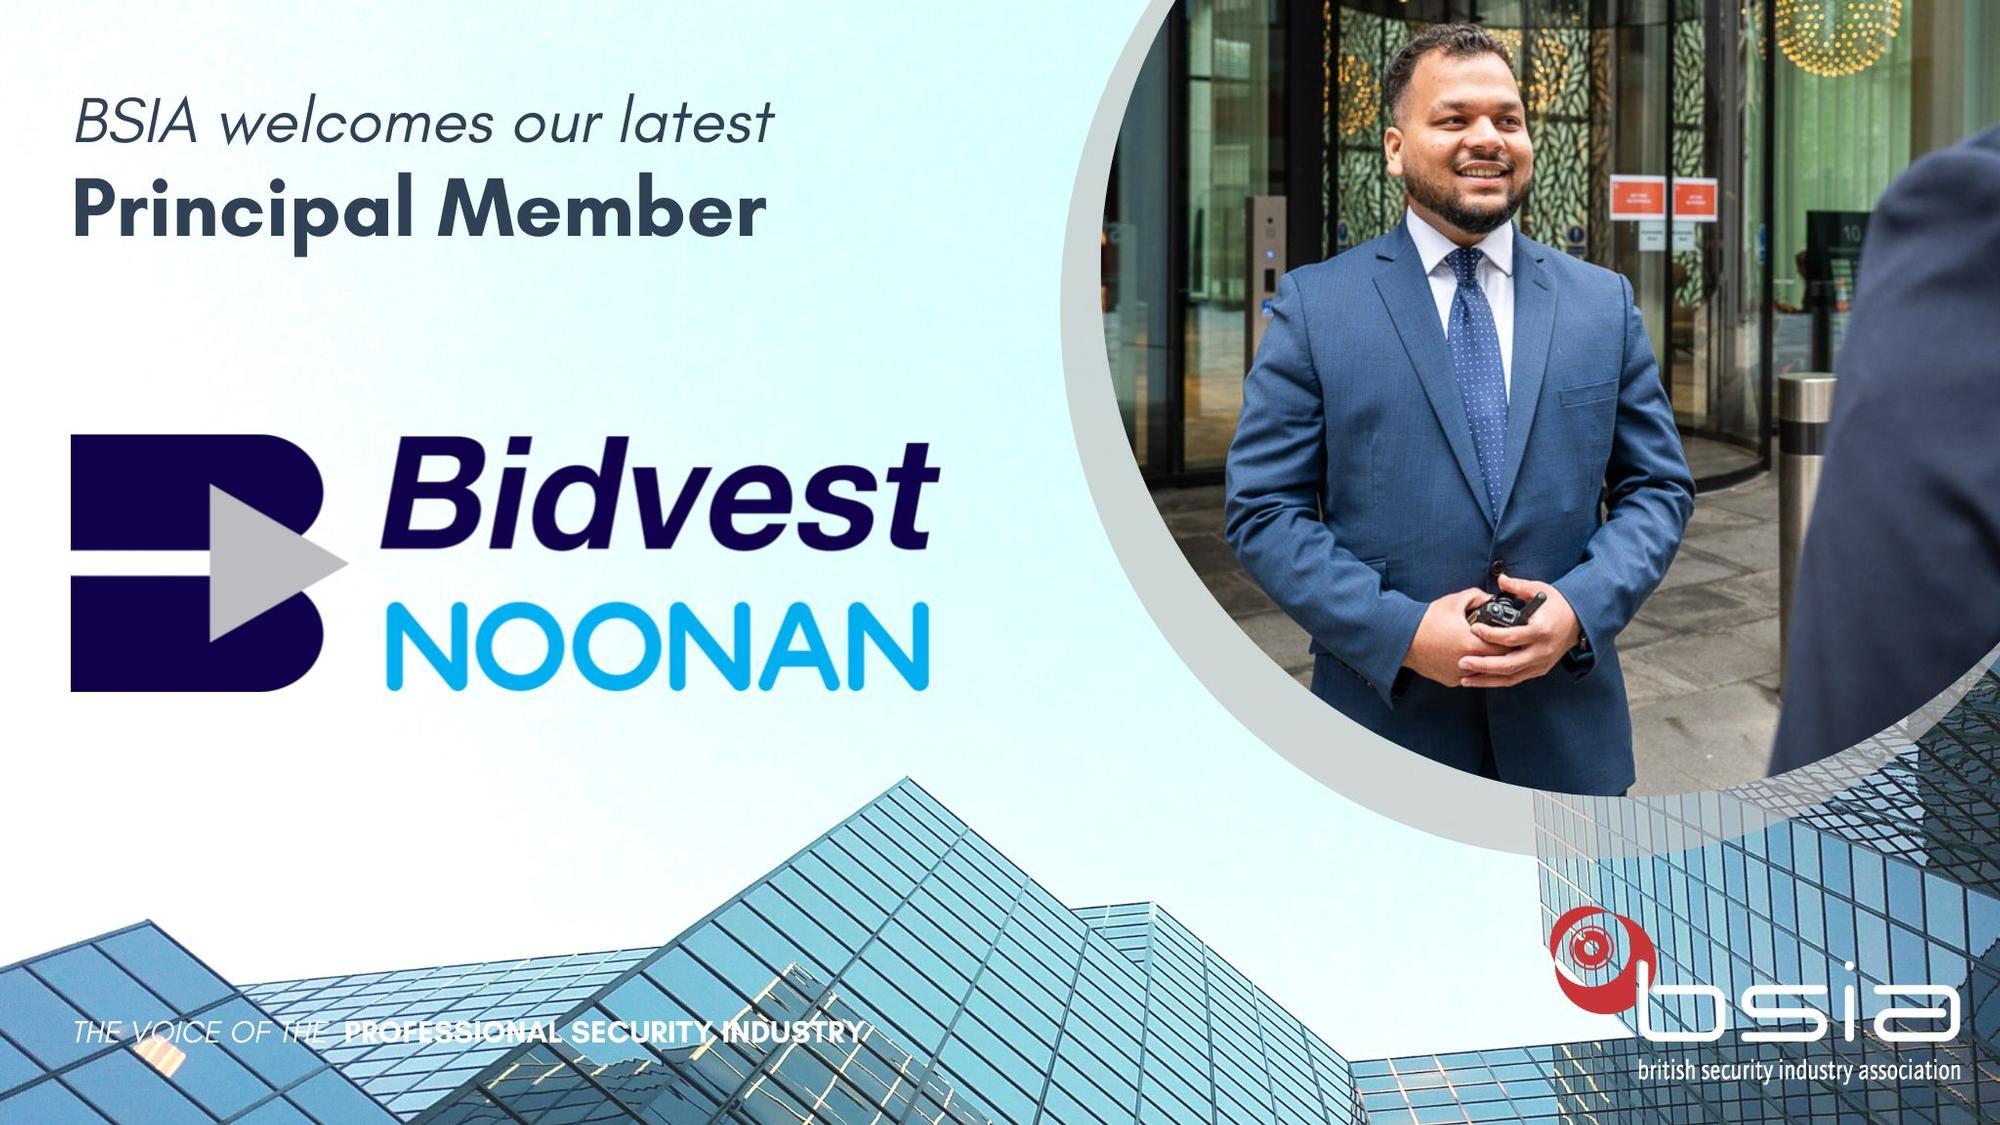 Bidvest Noonan join the BSIA as principal members